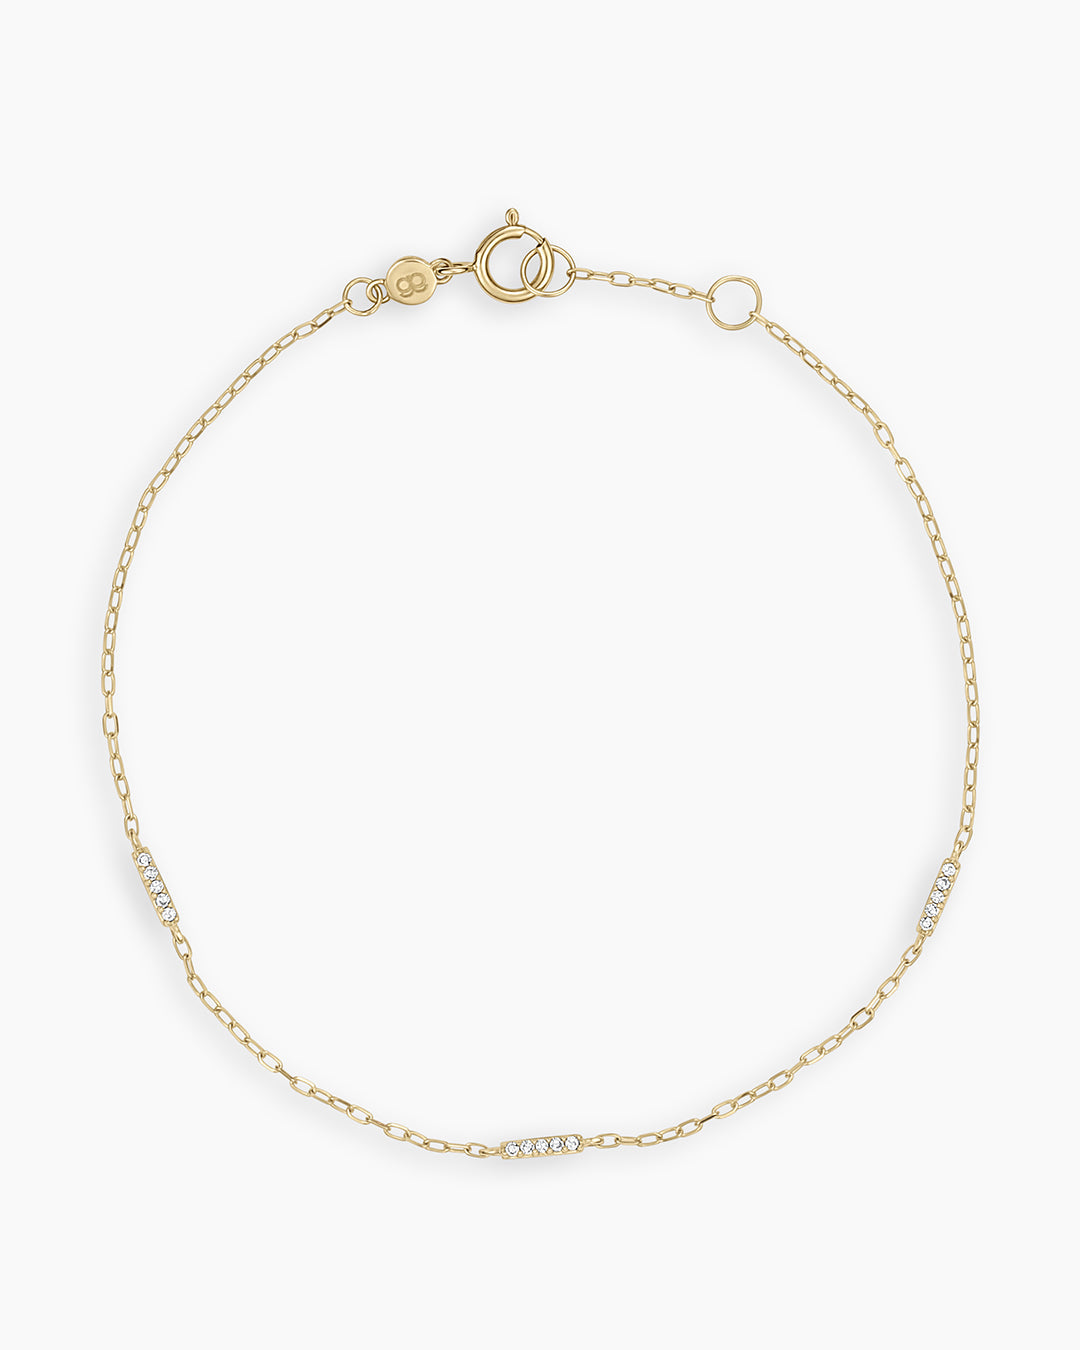 Gold Bangle Bracelet | Gold Jewelry NYC | Gold Bracelet | Bangles NYC